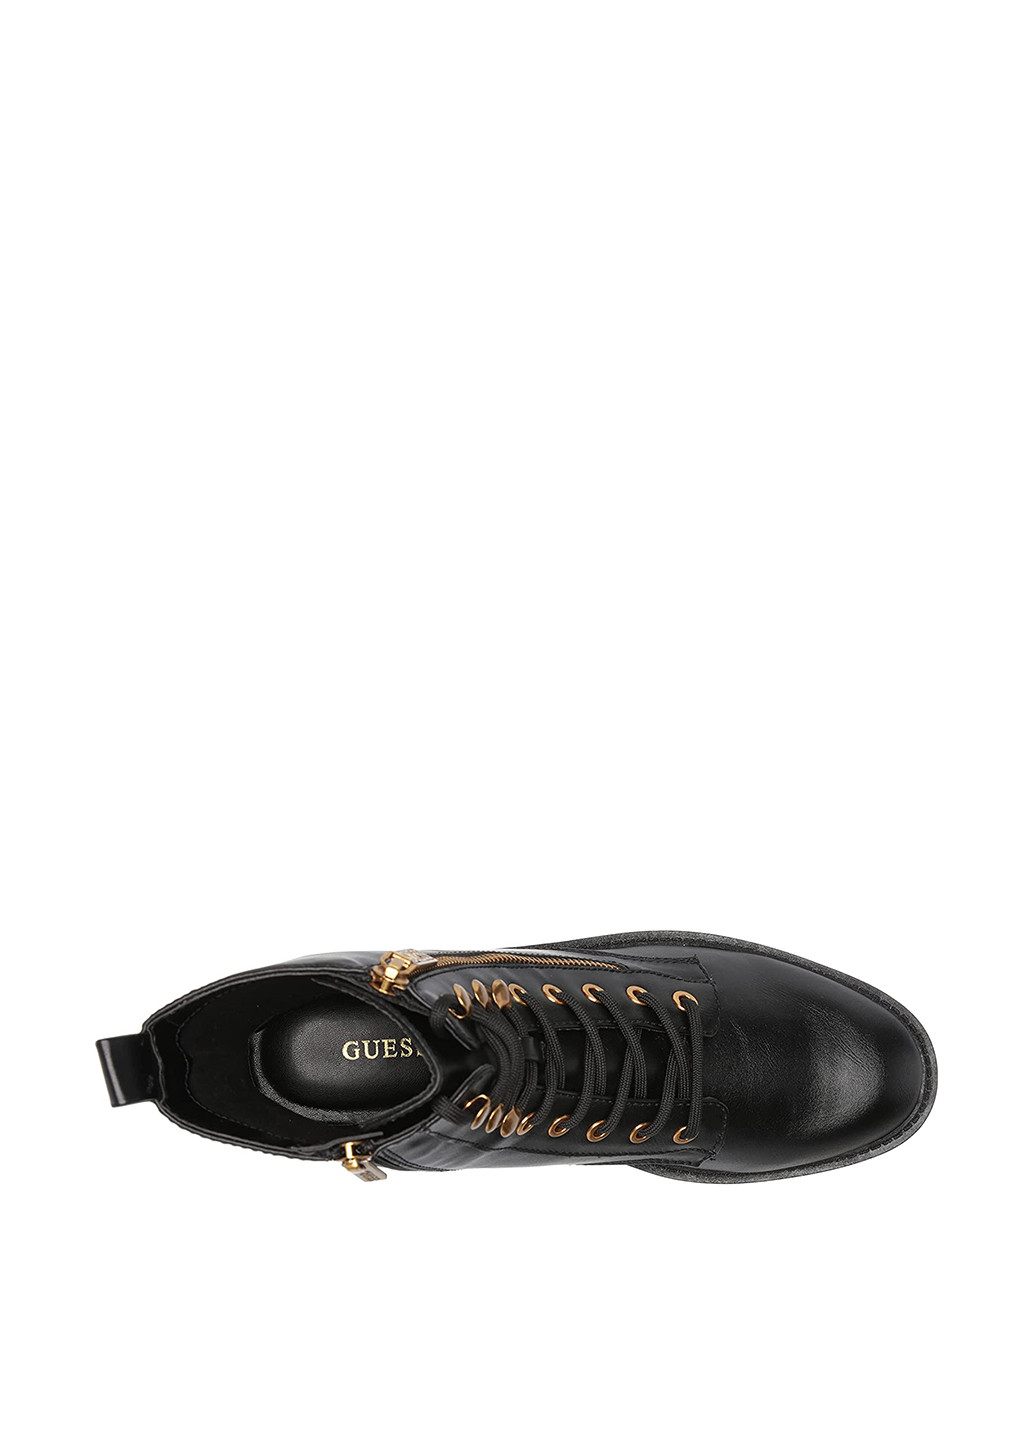 Осенние ботинки берцы Guess со шнуровкой, с молнией из искусственной кожи